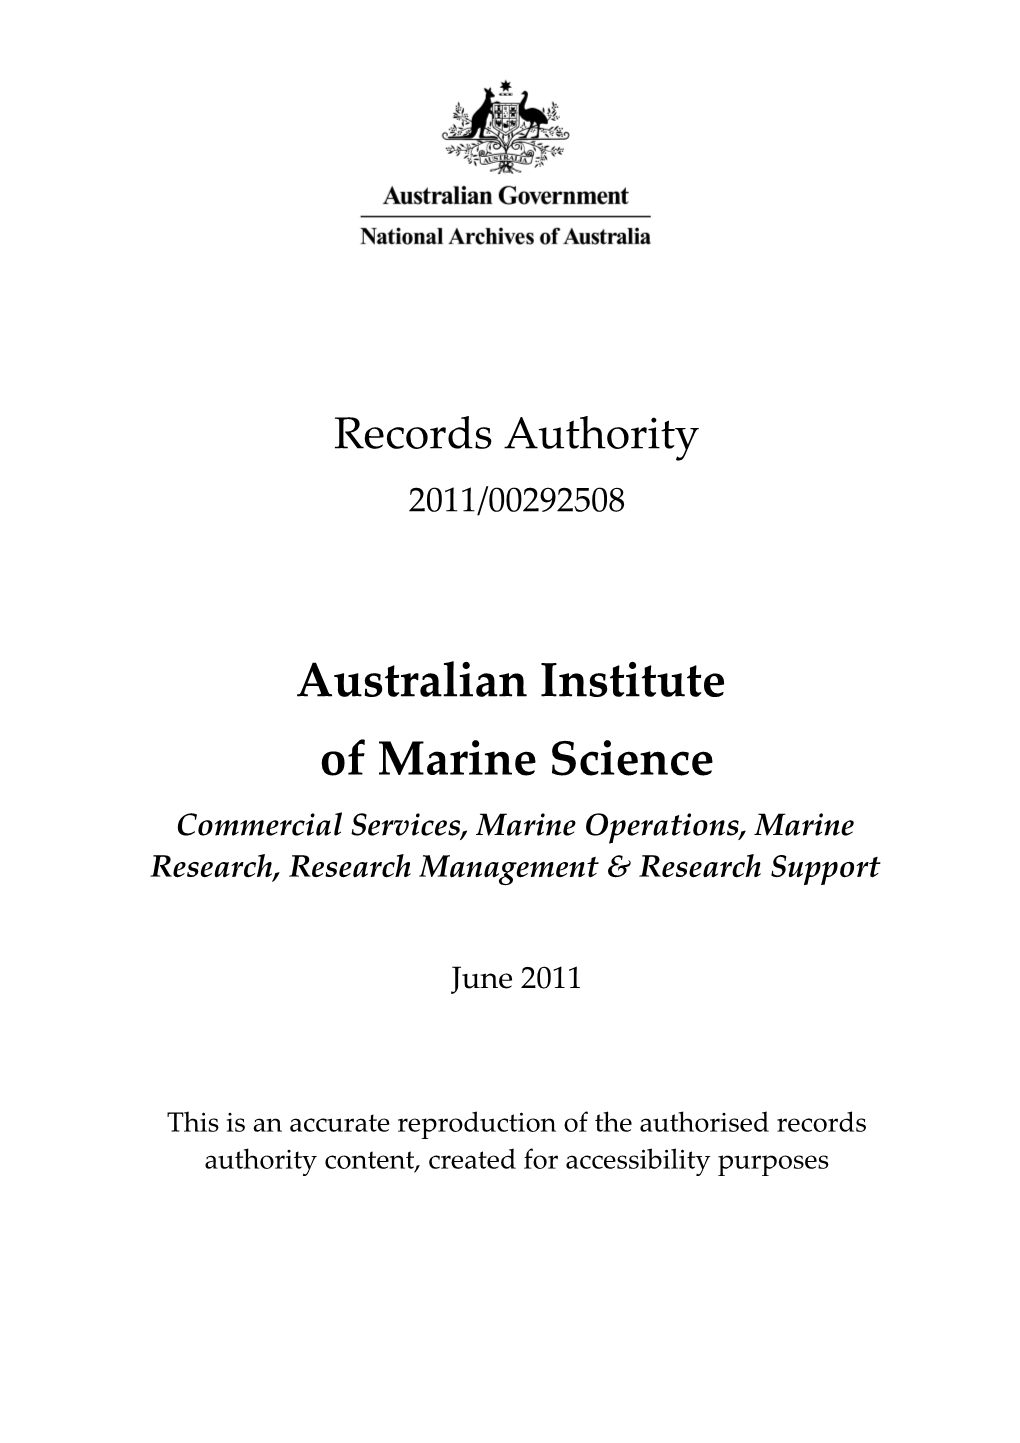 Australian Institute of Marine Science 2011/00292508